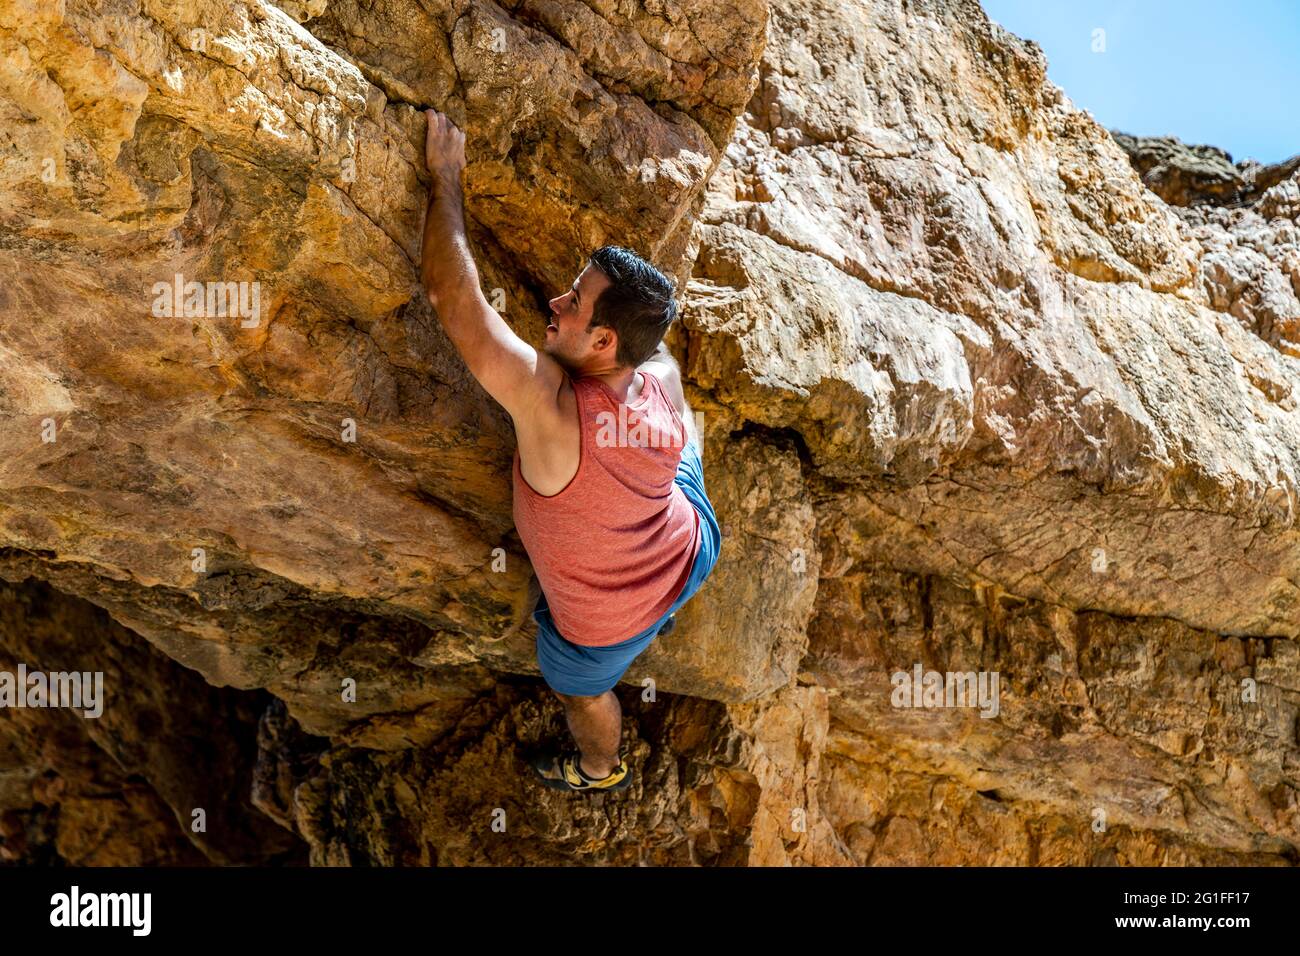 Un jeune grimpeur en toute sécurité escalade une falaise jaune en Algarve, au Portugal Banque D'Images